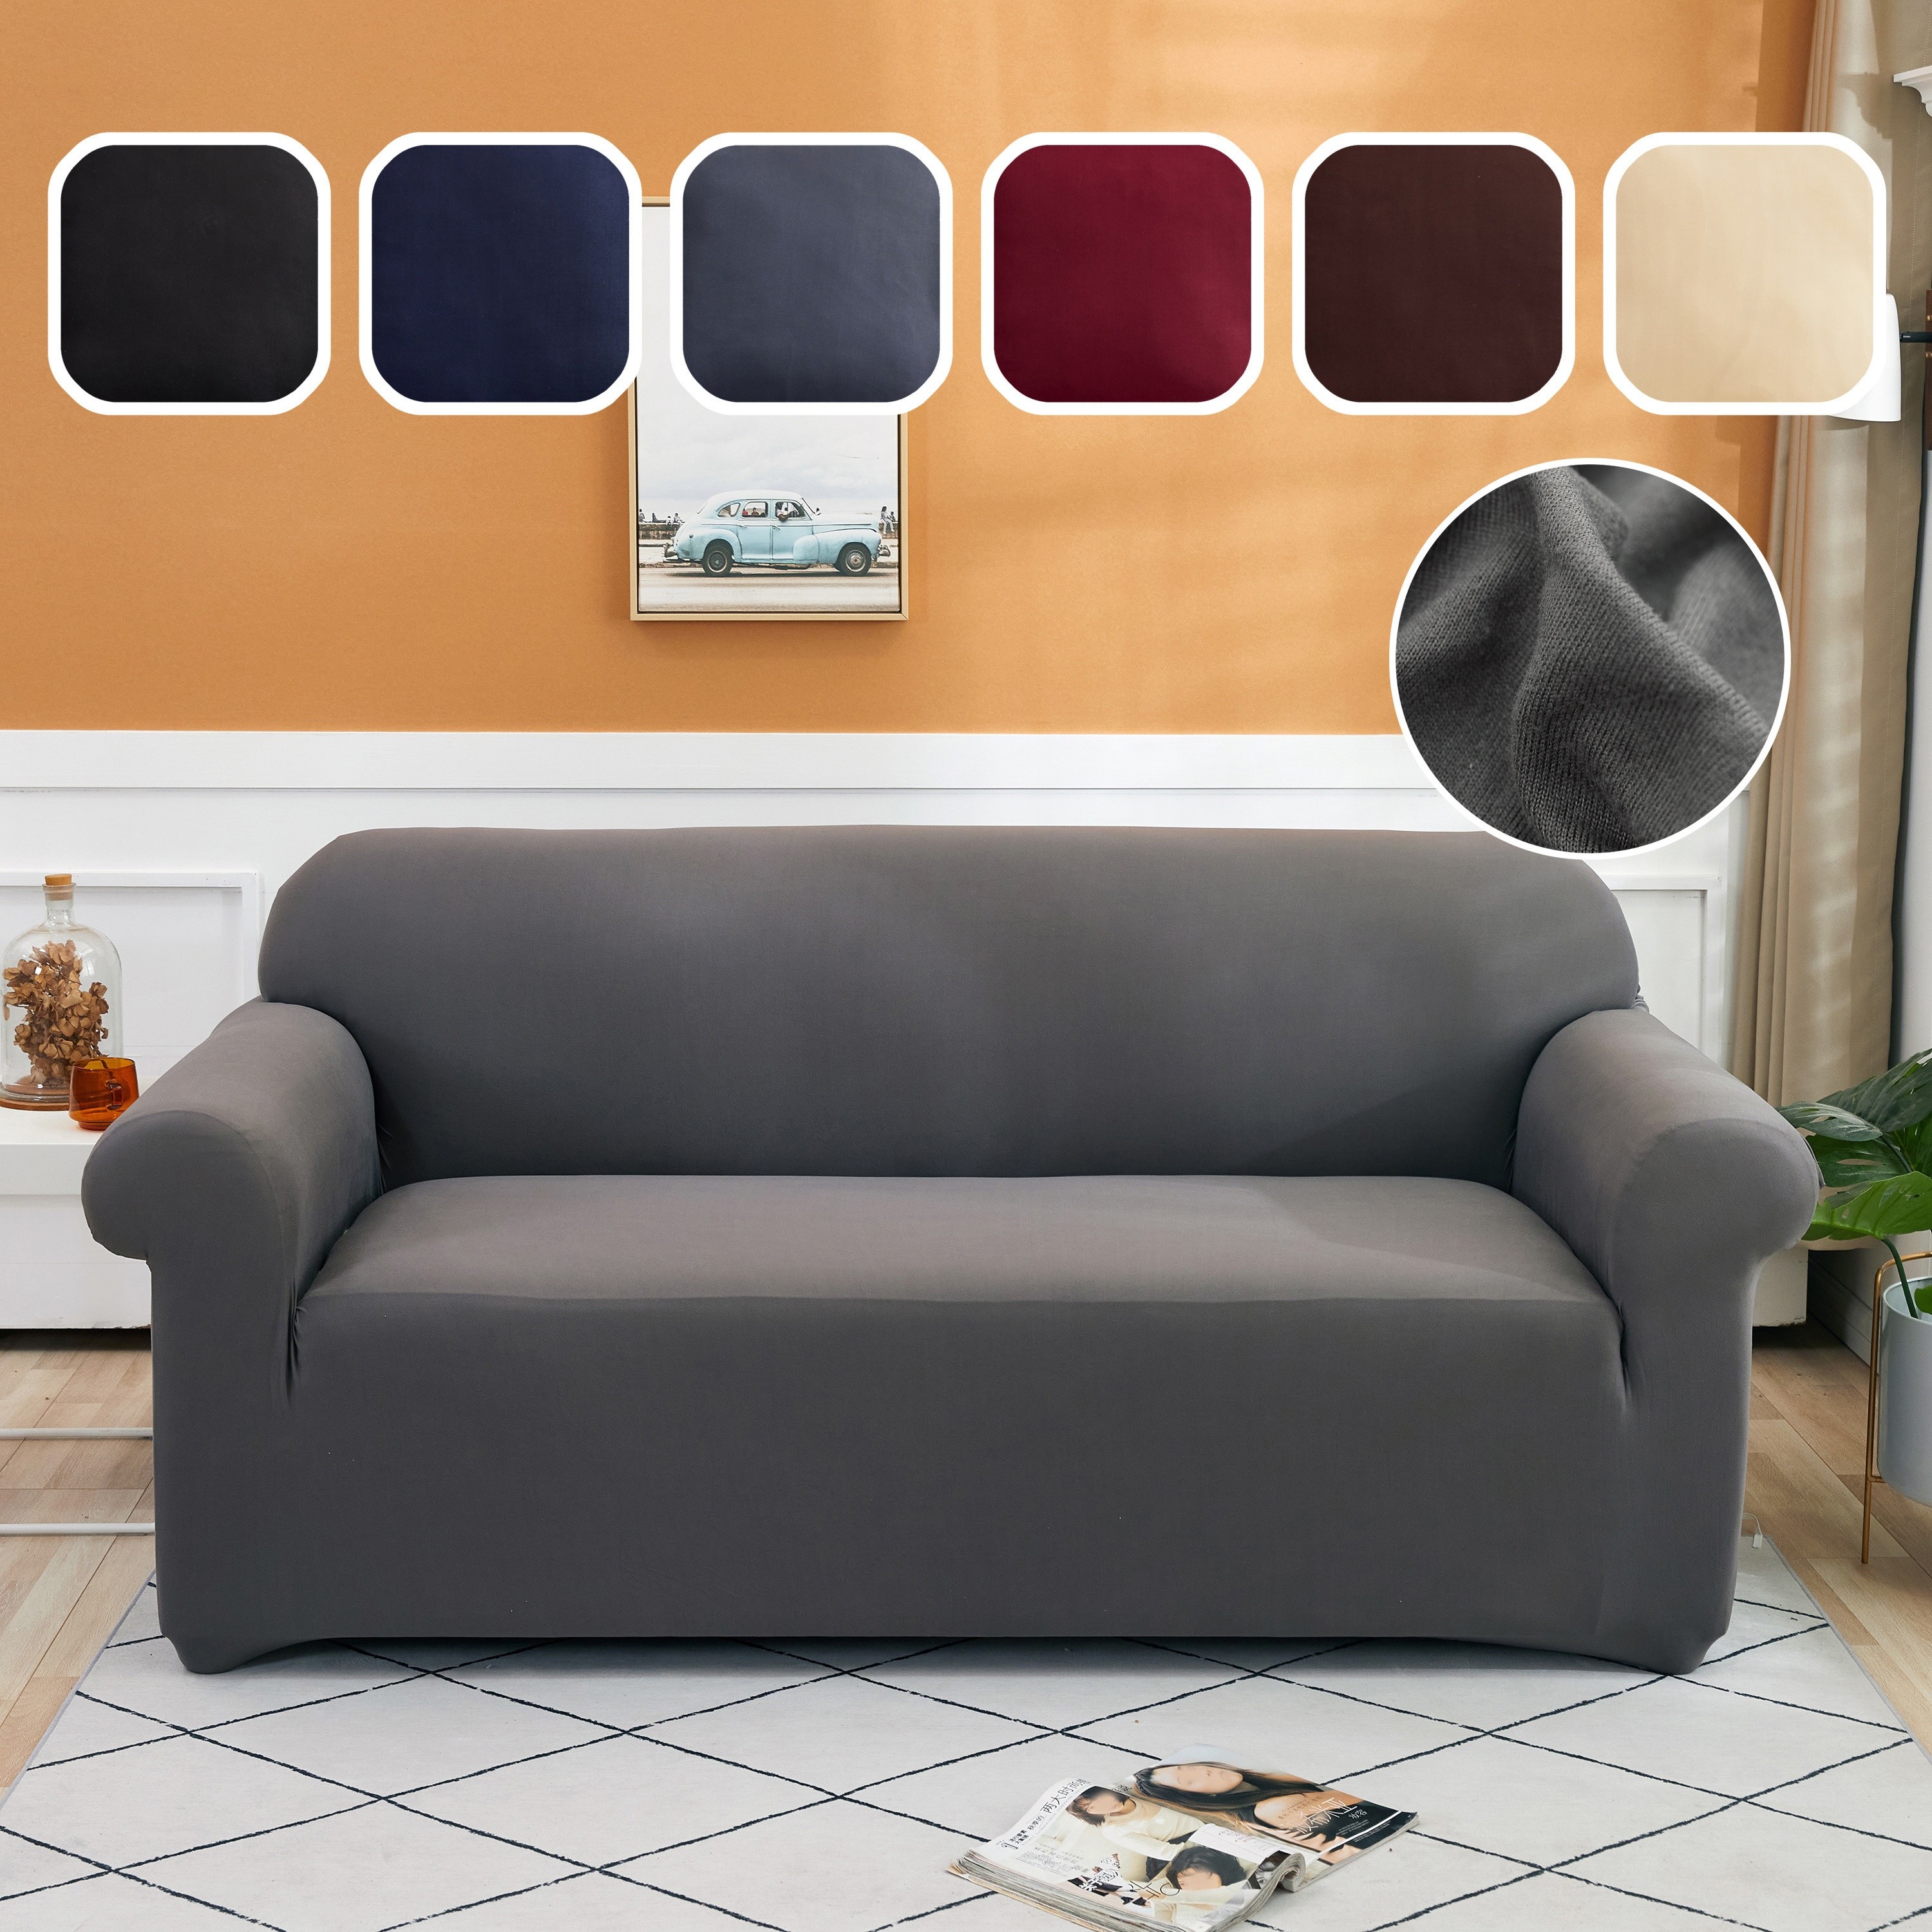  Funda de asiento de sofá de color liso con protector elástico  para muebles, protector de sofá antideslizante, funda impermeable con  múltiples fundas para el hogar de perros y mascotas, sofá D